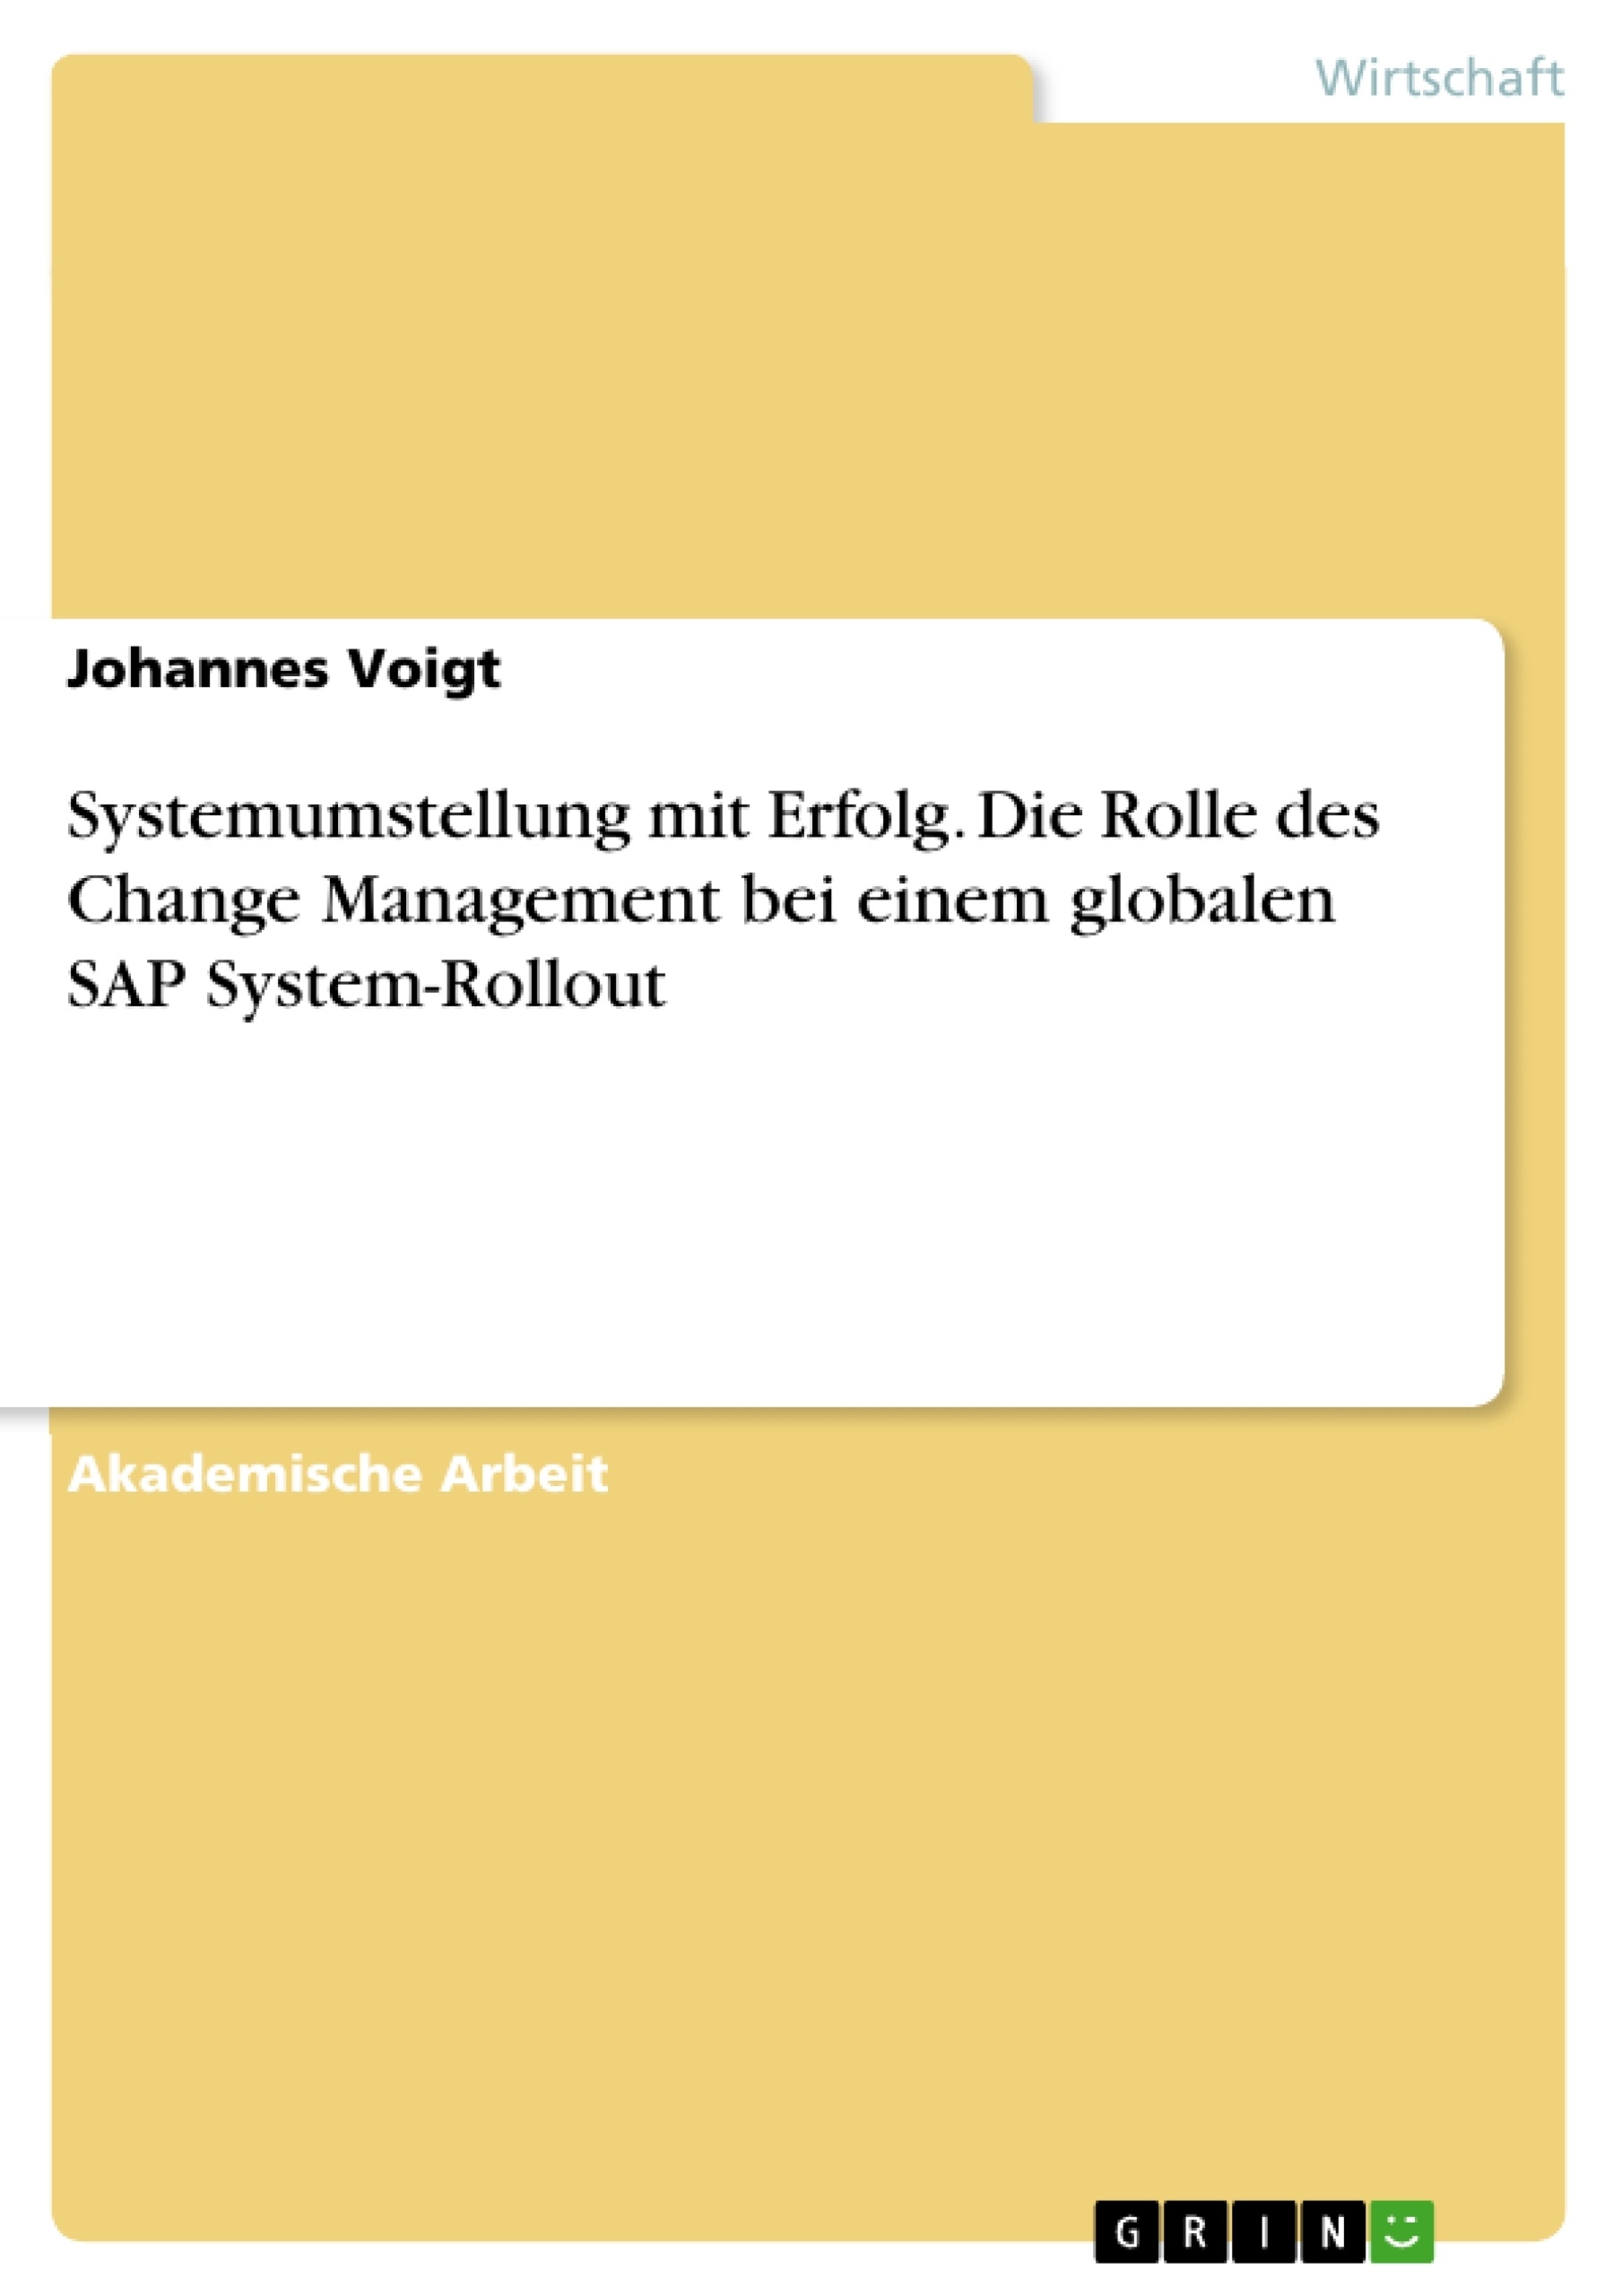 Título: Systemumstellung mit Erfolg. Die Rolle des Change Management bei einem globalen SAP System-Rollout